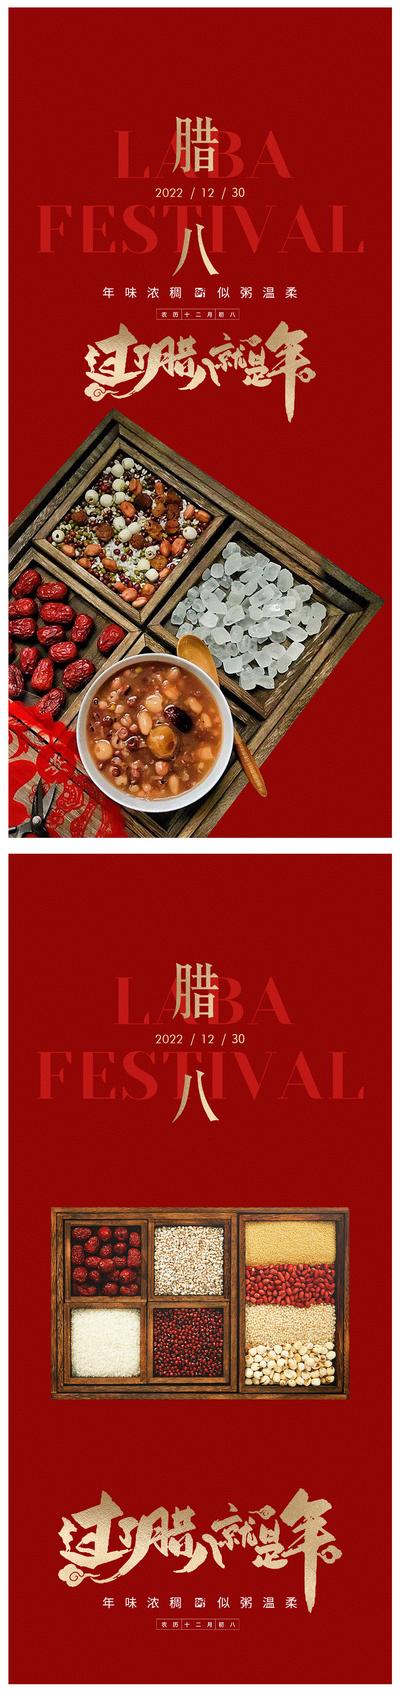 南门网 广告 海报 节日 腊八节 腊八 新年 民俗 品质 系列